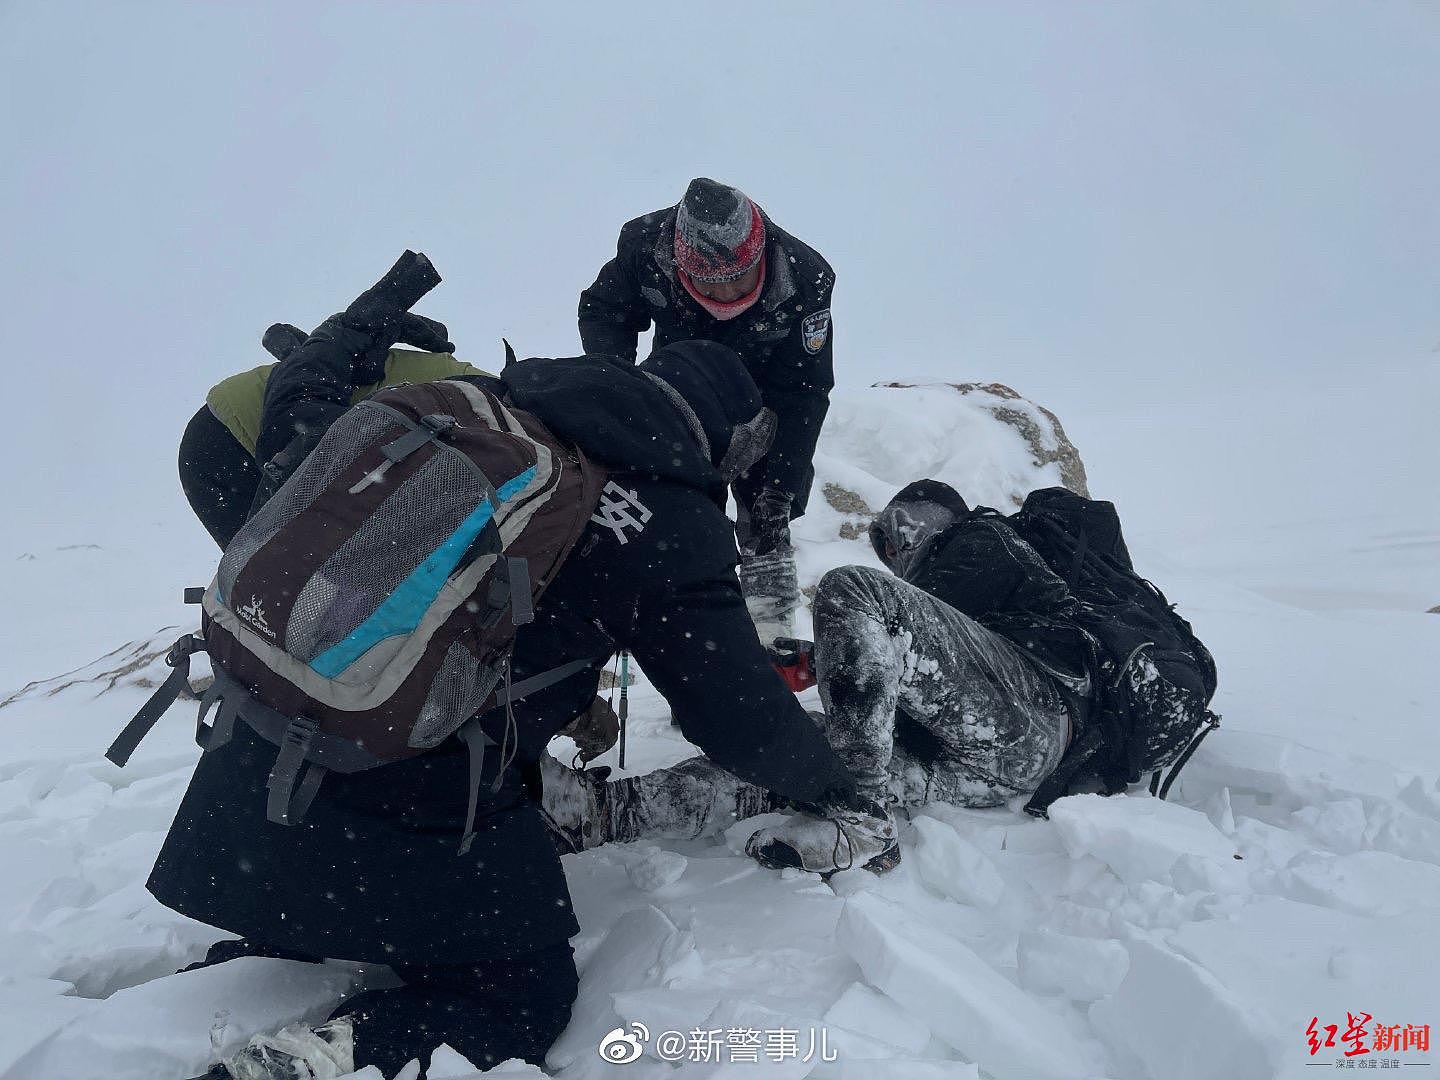 冈仁波齐转山幸存者否认为领队 救援人员讲述事发时雪中行进难度超过登珠峰